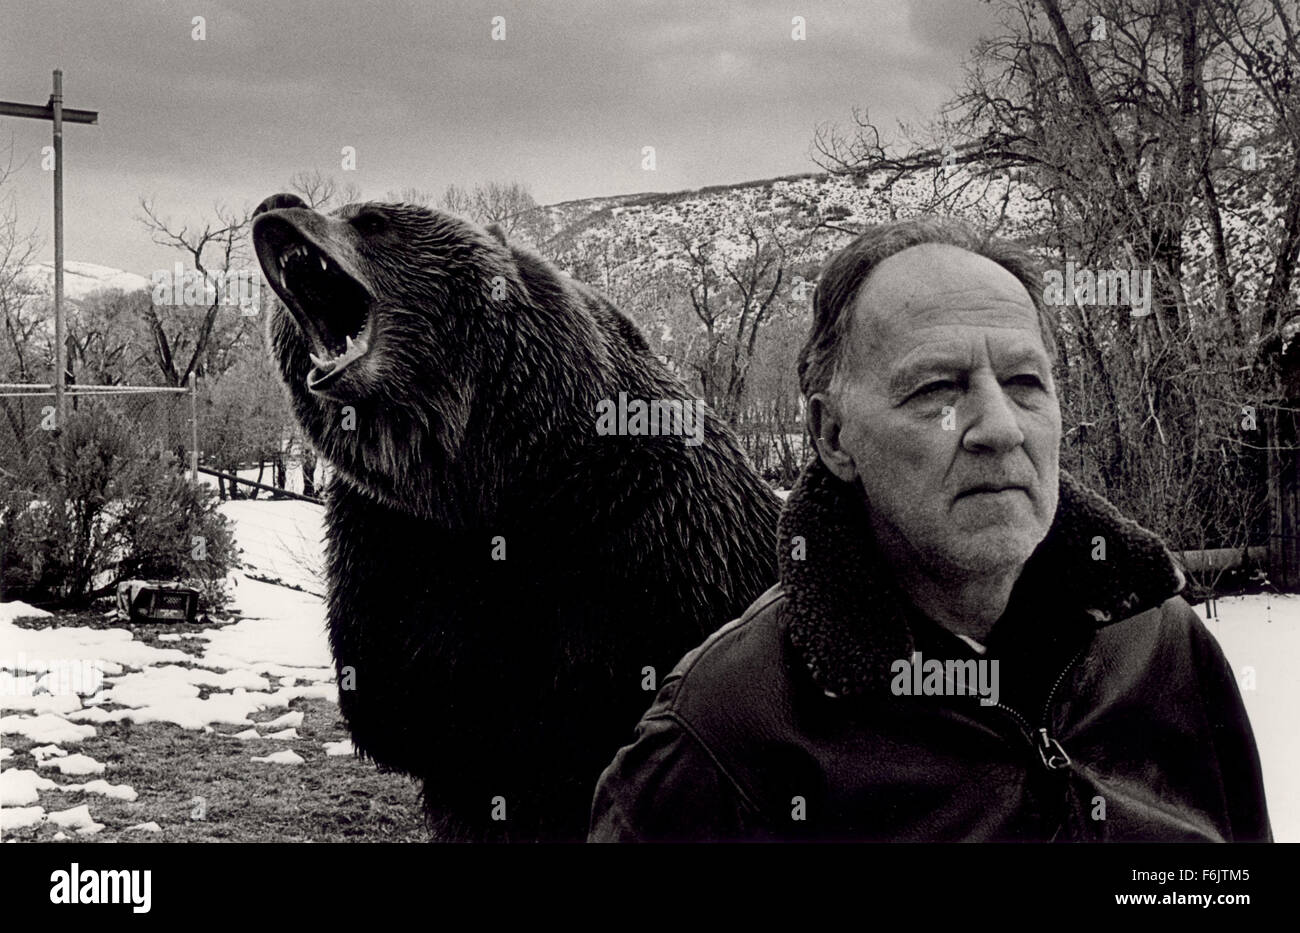 Data di rilascio: Gennaio 24, 2005. Il titolo del filmato: Grizzly Man. STUDIO: Lions Gate Films. Trama: una devastante e angosciante prendere su orso grizzly attivisti Timothy Treadwell e Amélie Huguenard, coloro che sono stati uccisi nel mese di ottobre del 2003 durante la sua vita tra grizzlies in Alaska. Nella foto: Werner Herzog stelle come se stesso/narratore/intervistatore. Foto Stock